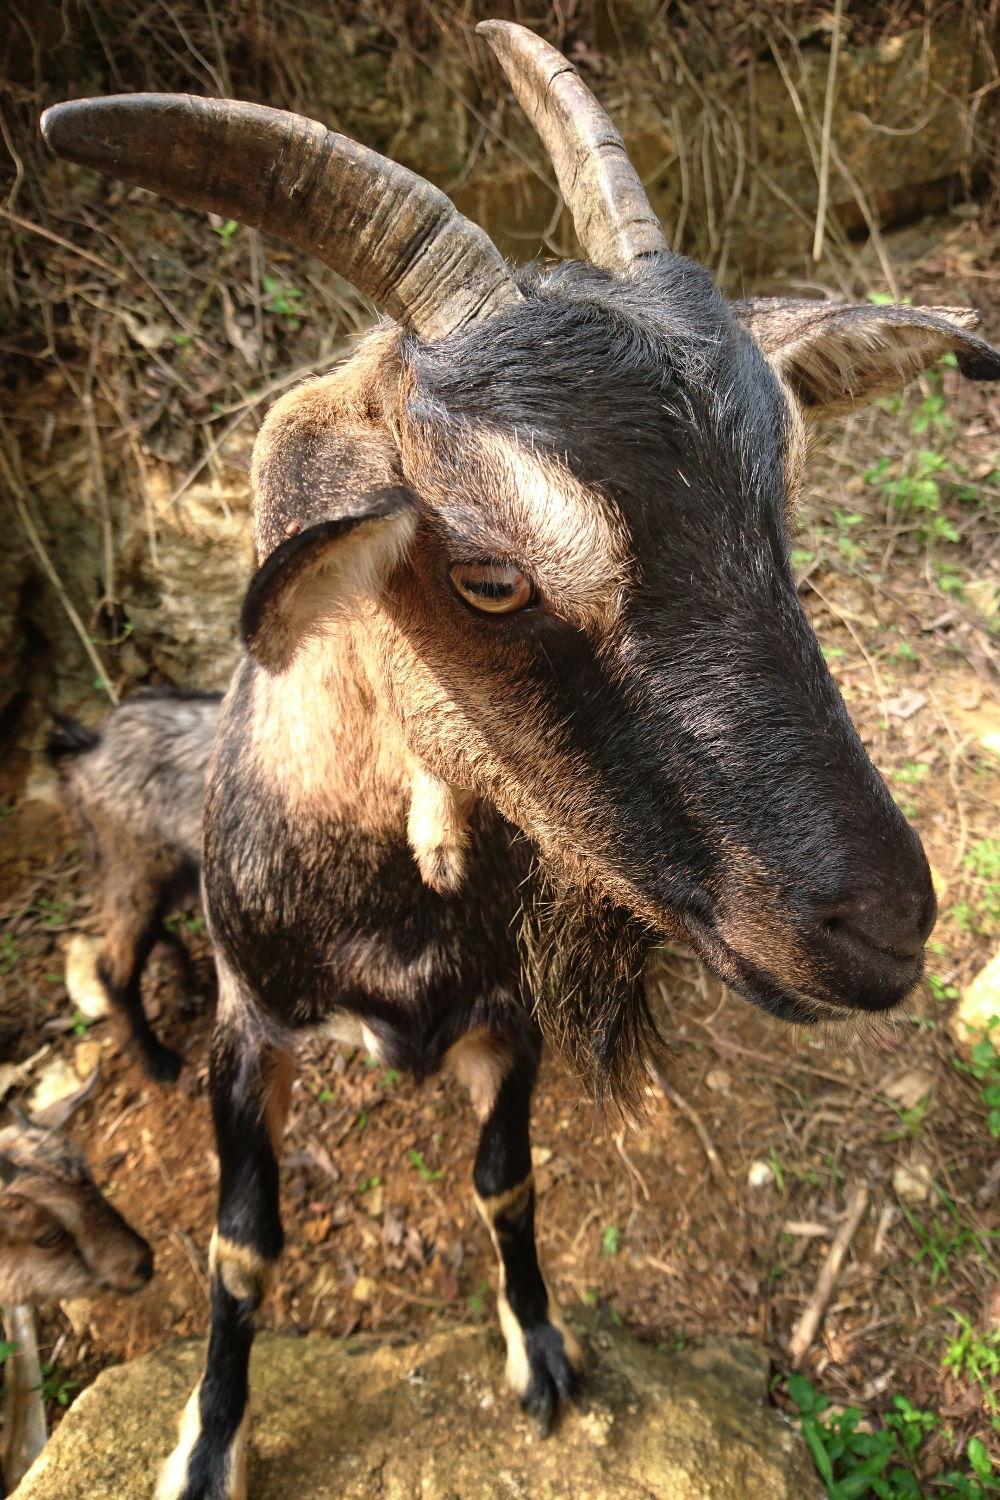 Curios Goat